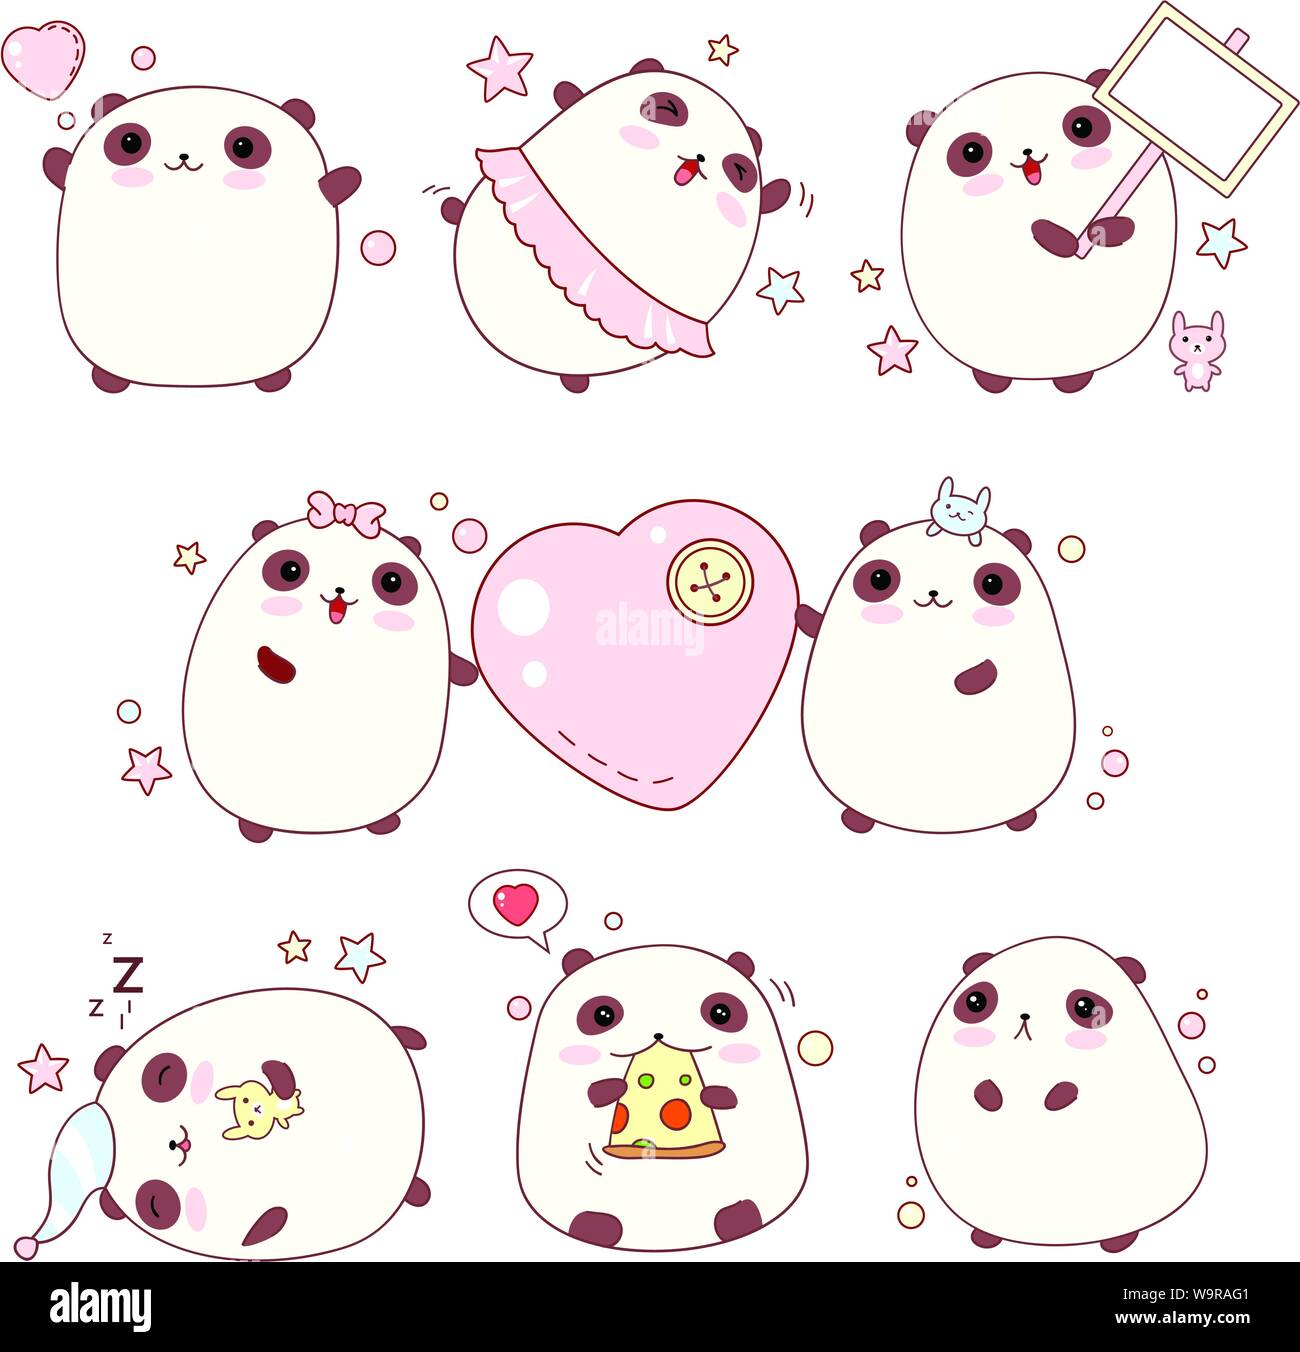 Collection de pandas mignons avec différentes émotions dans le style kawaii Illustration de Vecteur